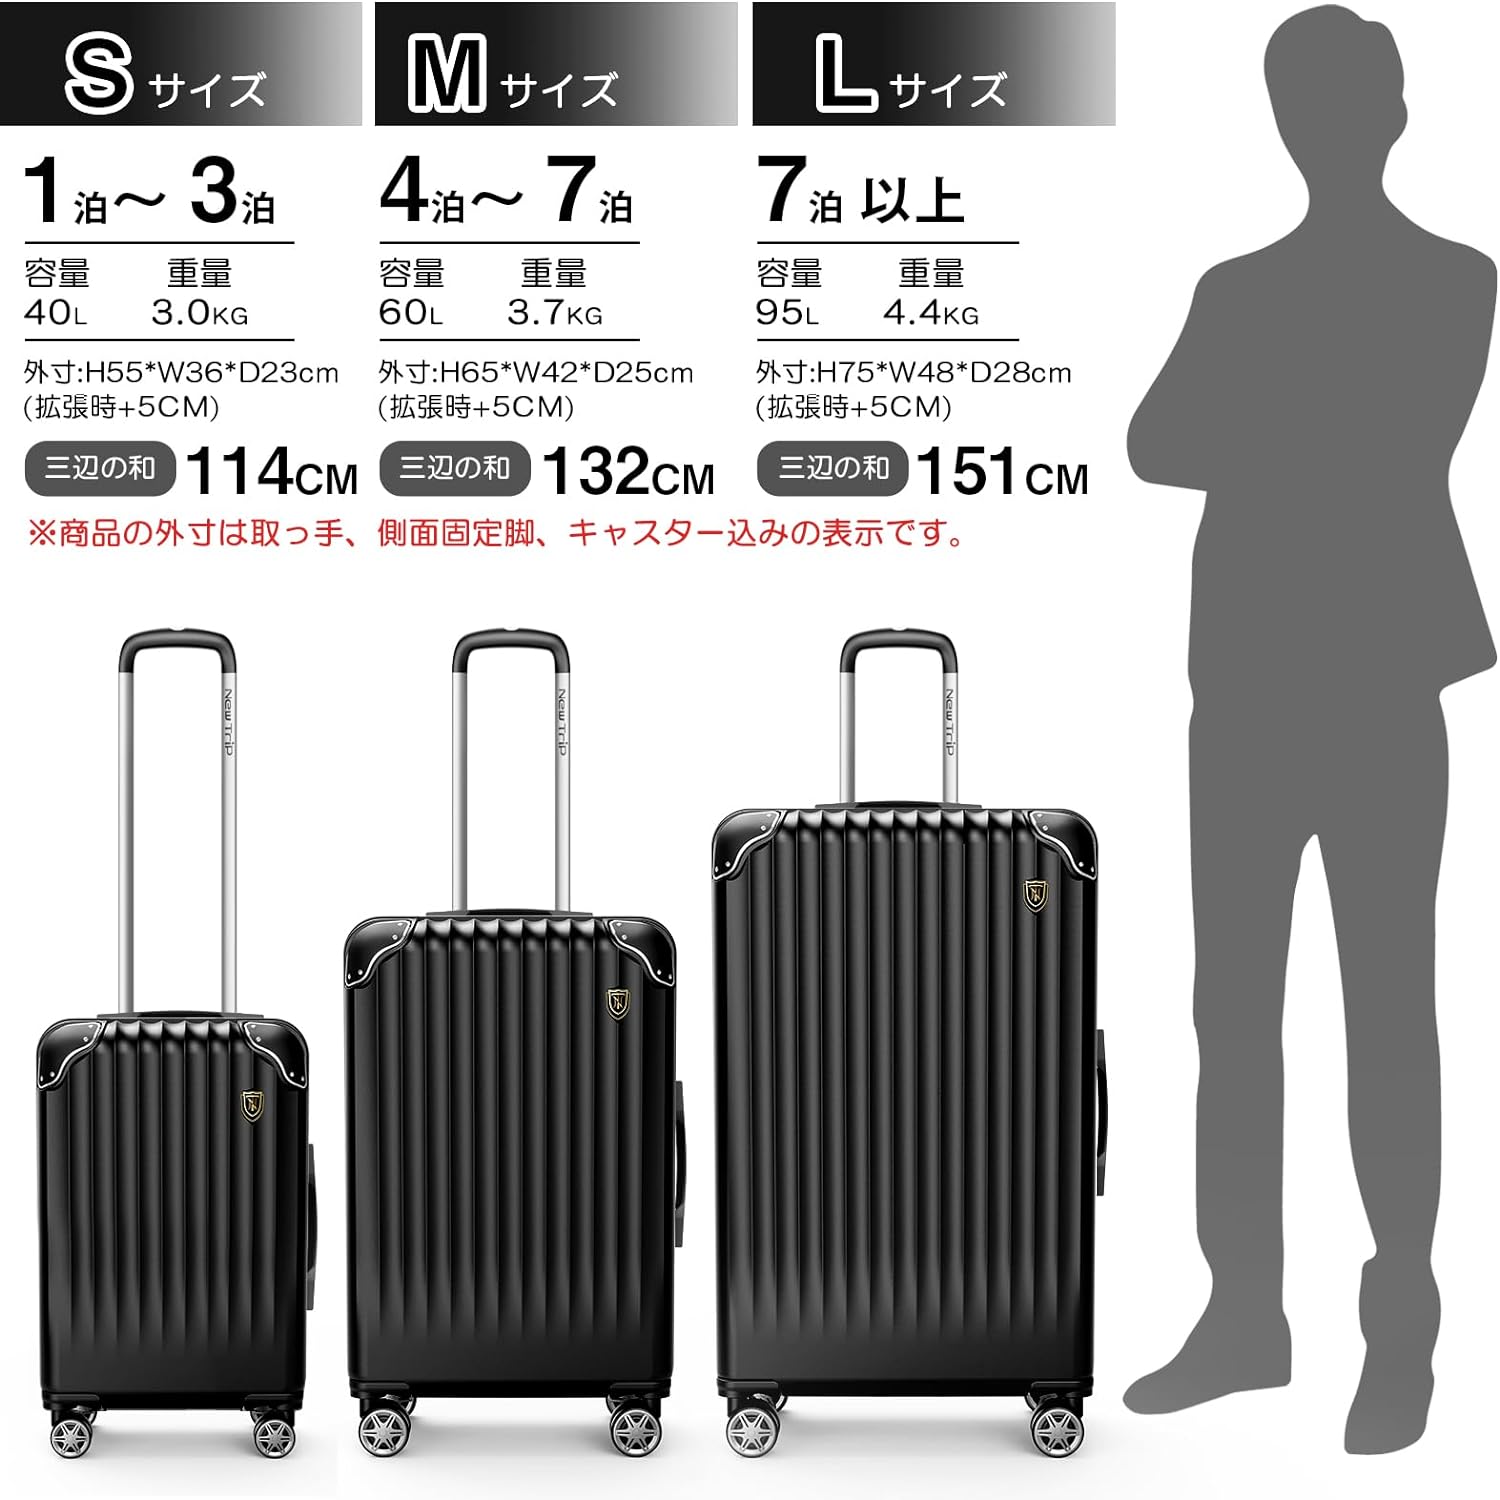 [New Trip] スーツケース 拡張機能付き S-L ブラック 40L-95L 容量 静音 旅行 海外 出張